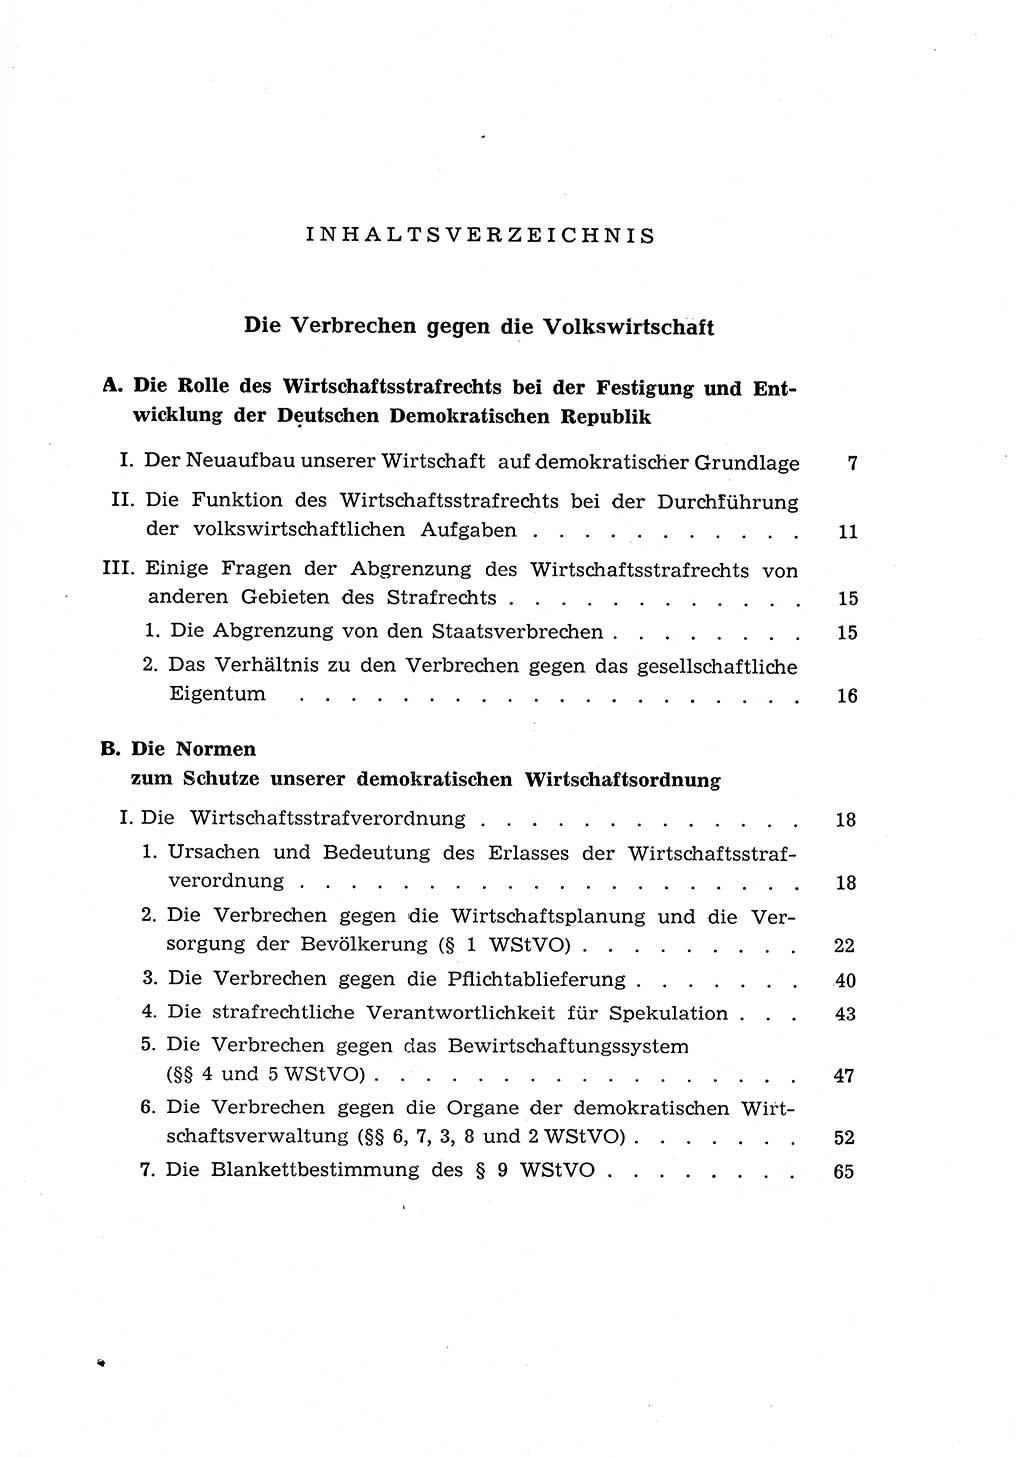 Materialien zum Strafrecht, Besonderer Teil [Deutsche Demokratische Republik (DDR)] 1955, Seite 5 (Mat. Strafr. BT DDR 1955, S. 5)